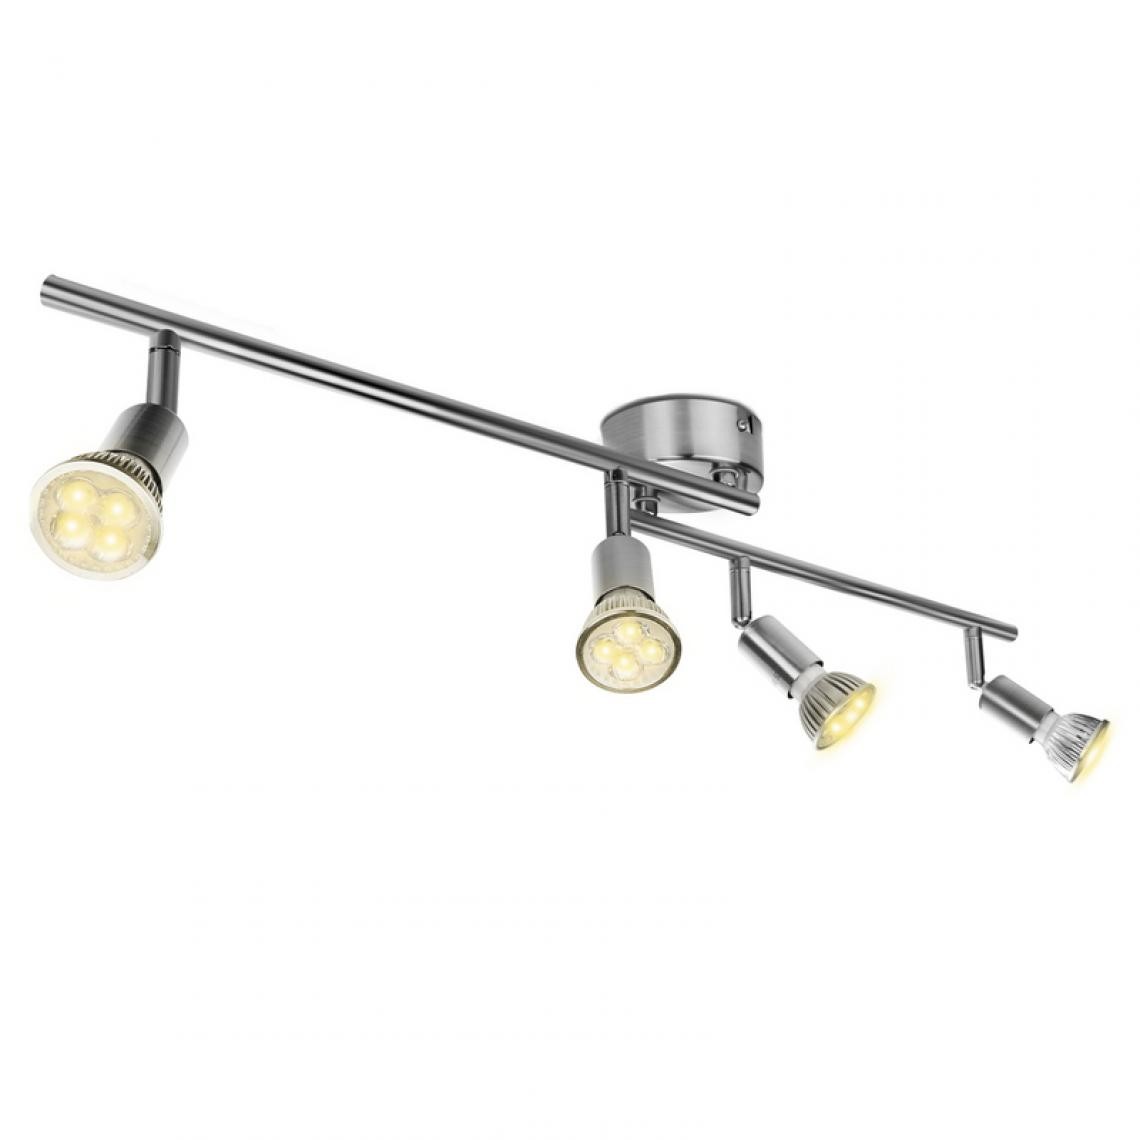 Einfeben - Spot de plafond à LED Spot de plafond GU10 Lampe spot à 4 flammes - Lampe connectée